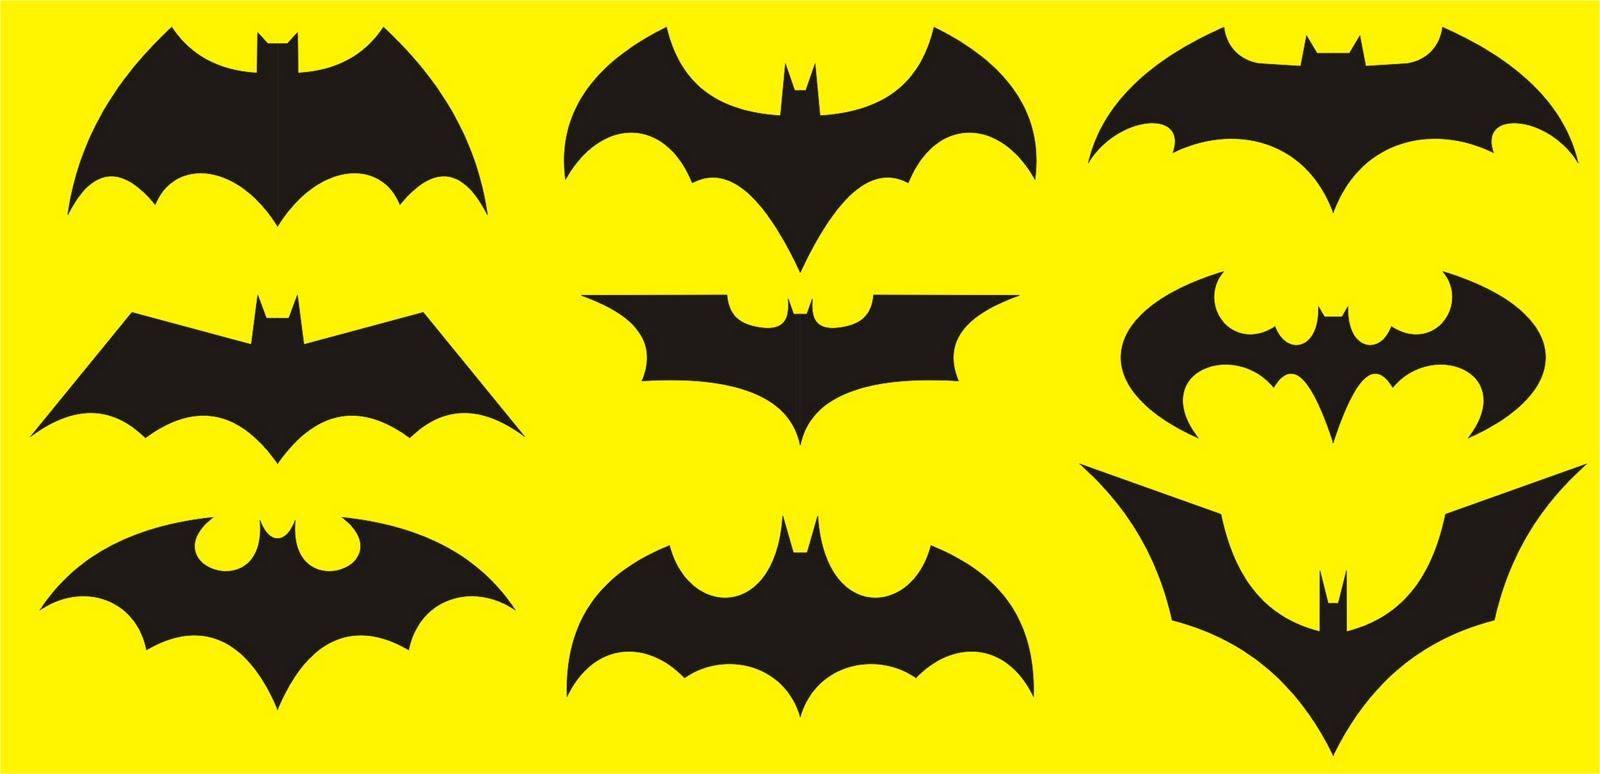 Batman Bat Logo - Free Images Of Batman Symbol, Download Free Clip Art, Free Clip Art ...